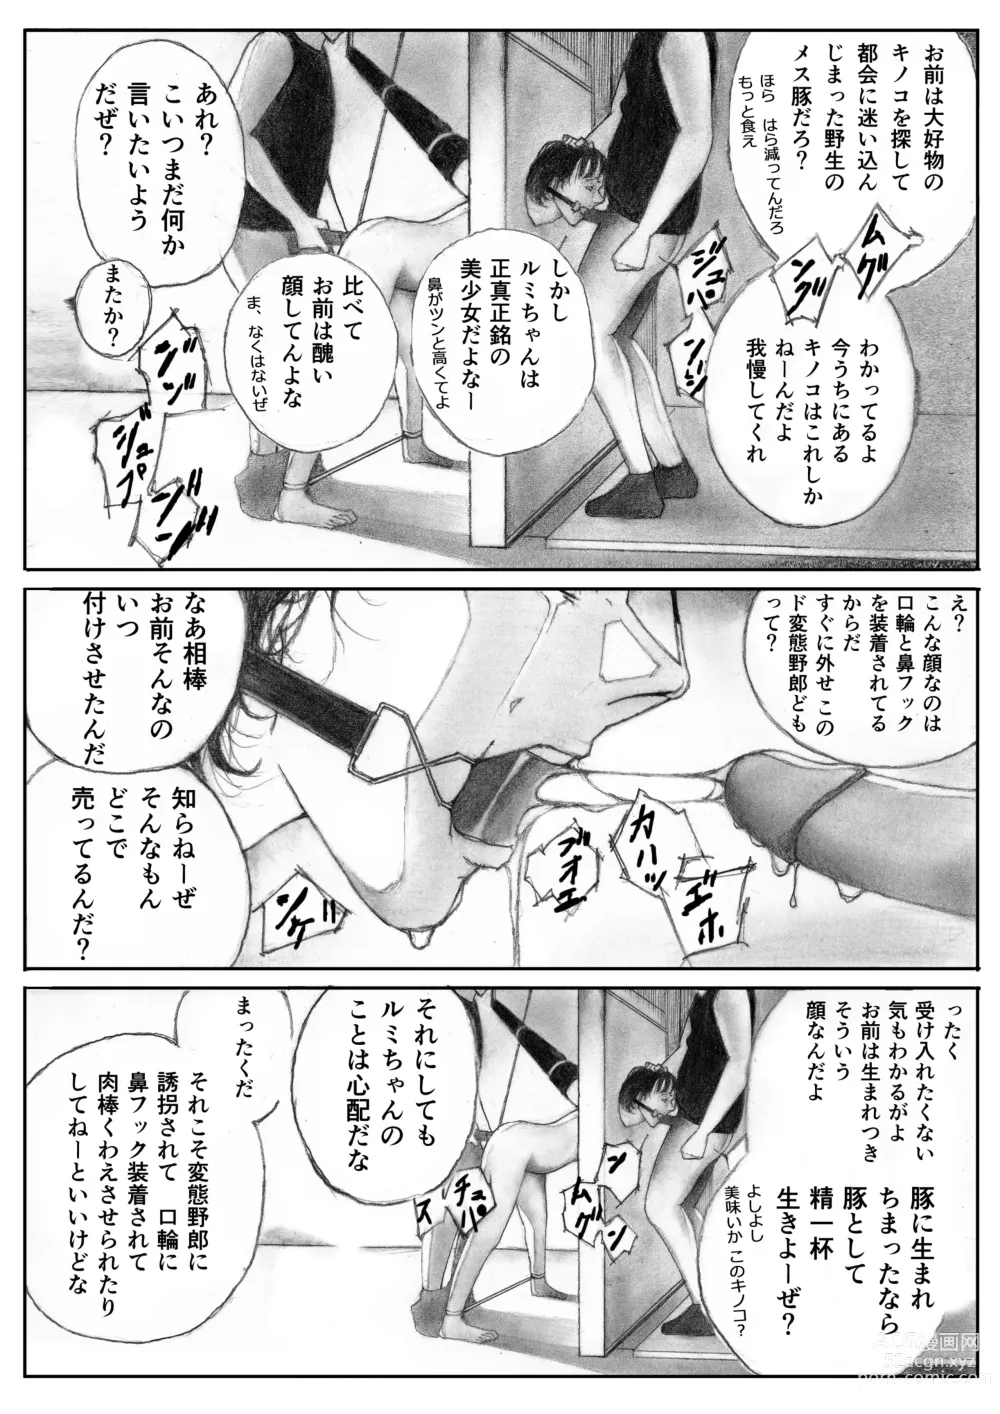 Page 5 of doujinshi Katte ni Buta Aigo ♡